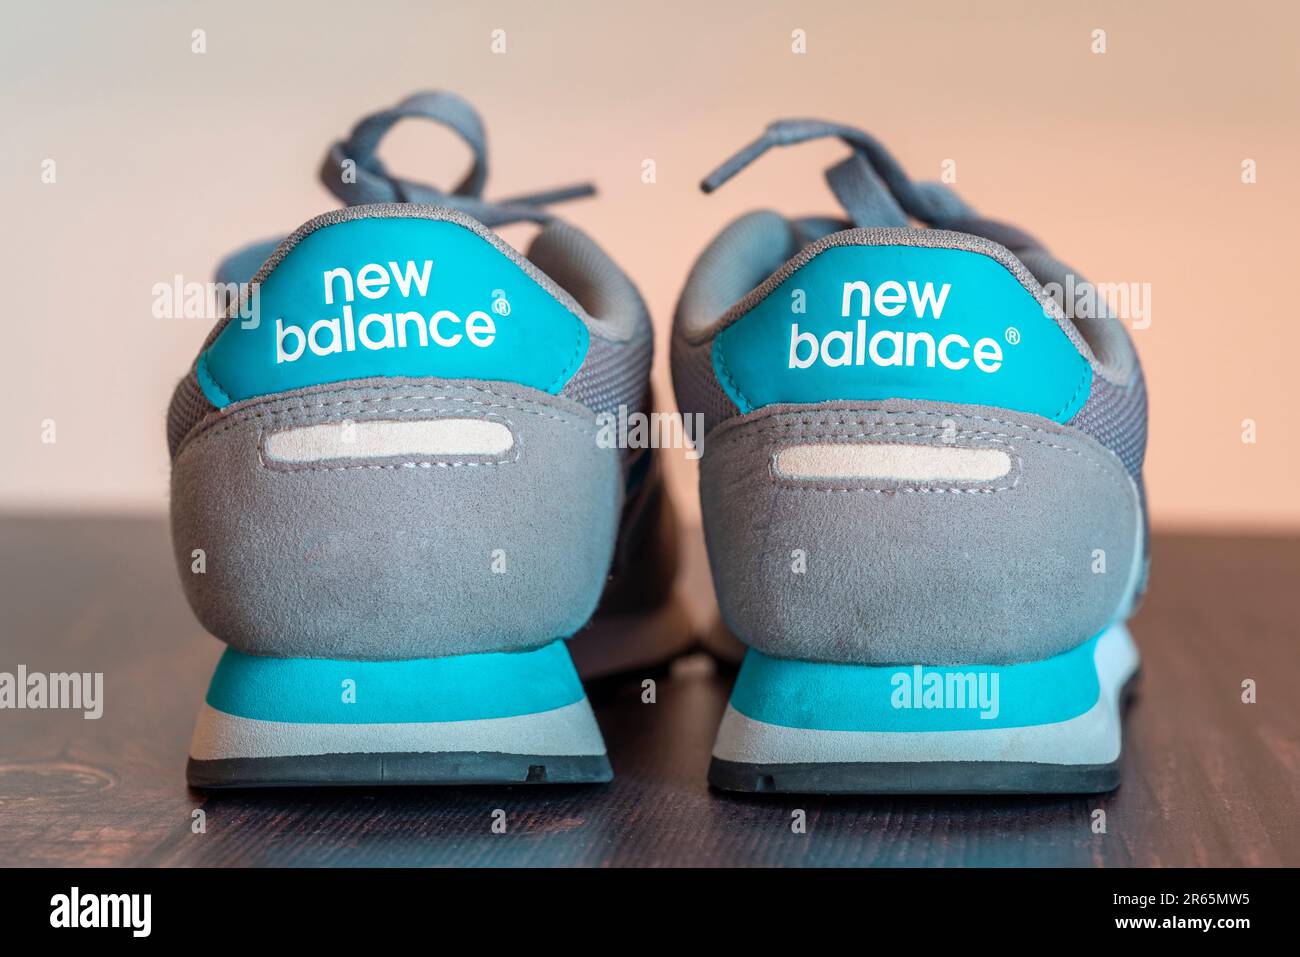 QUESTA È Una FOTO D'ARCHIVIO - retro di un paio di sneaker New Balance turchese e grigio Foto Stock